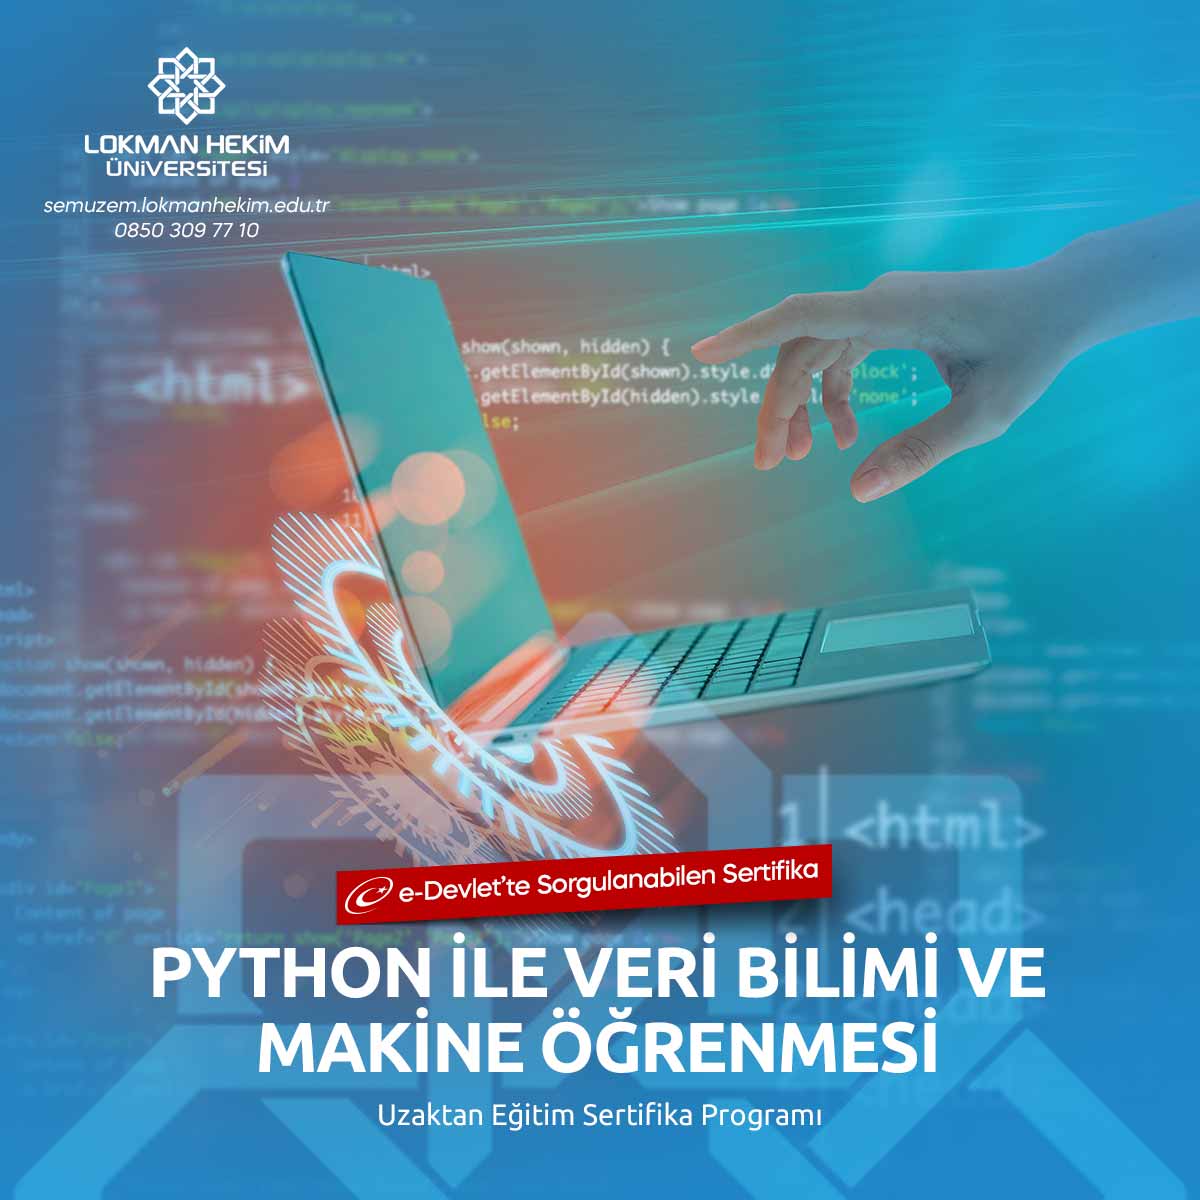 Python ile Veri Bilimi ve Makine Öğrenmesi Sertifikası Nedir, Nasıl Alınır?